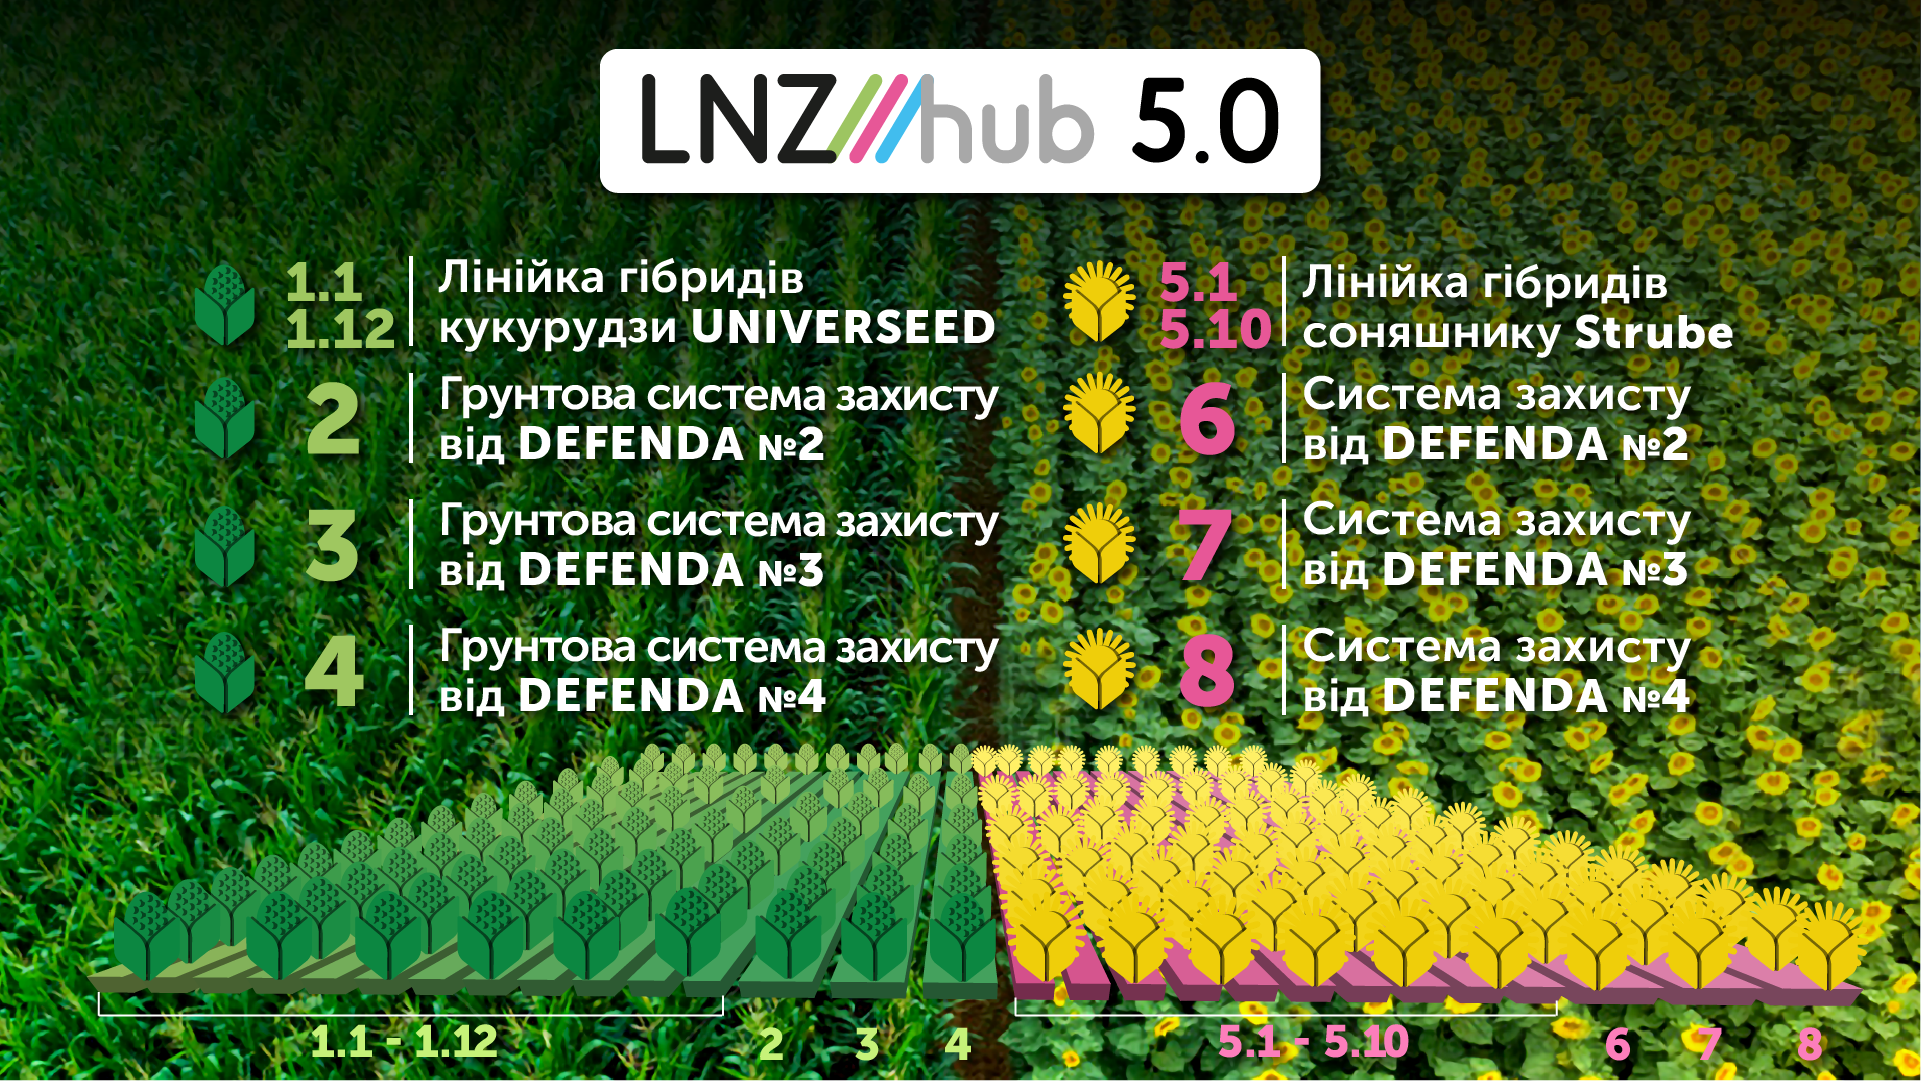  LNZ Hub 5.0 у подробицях фото 1 LNZ Group